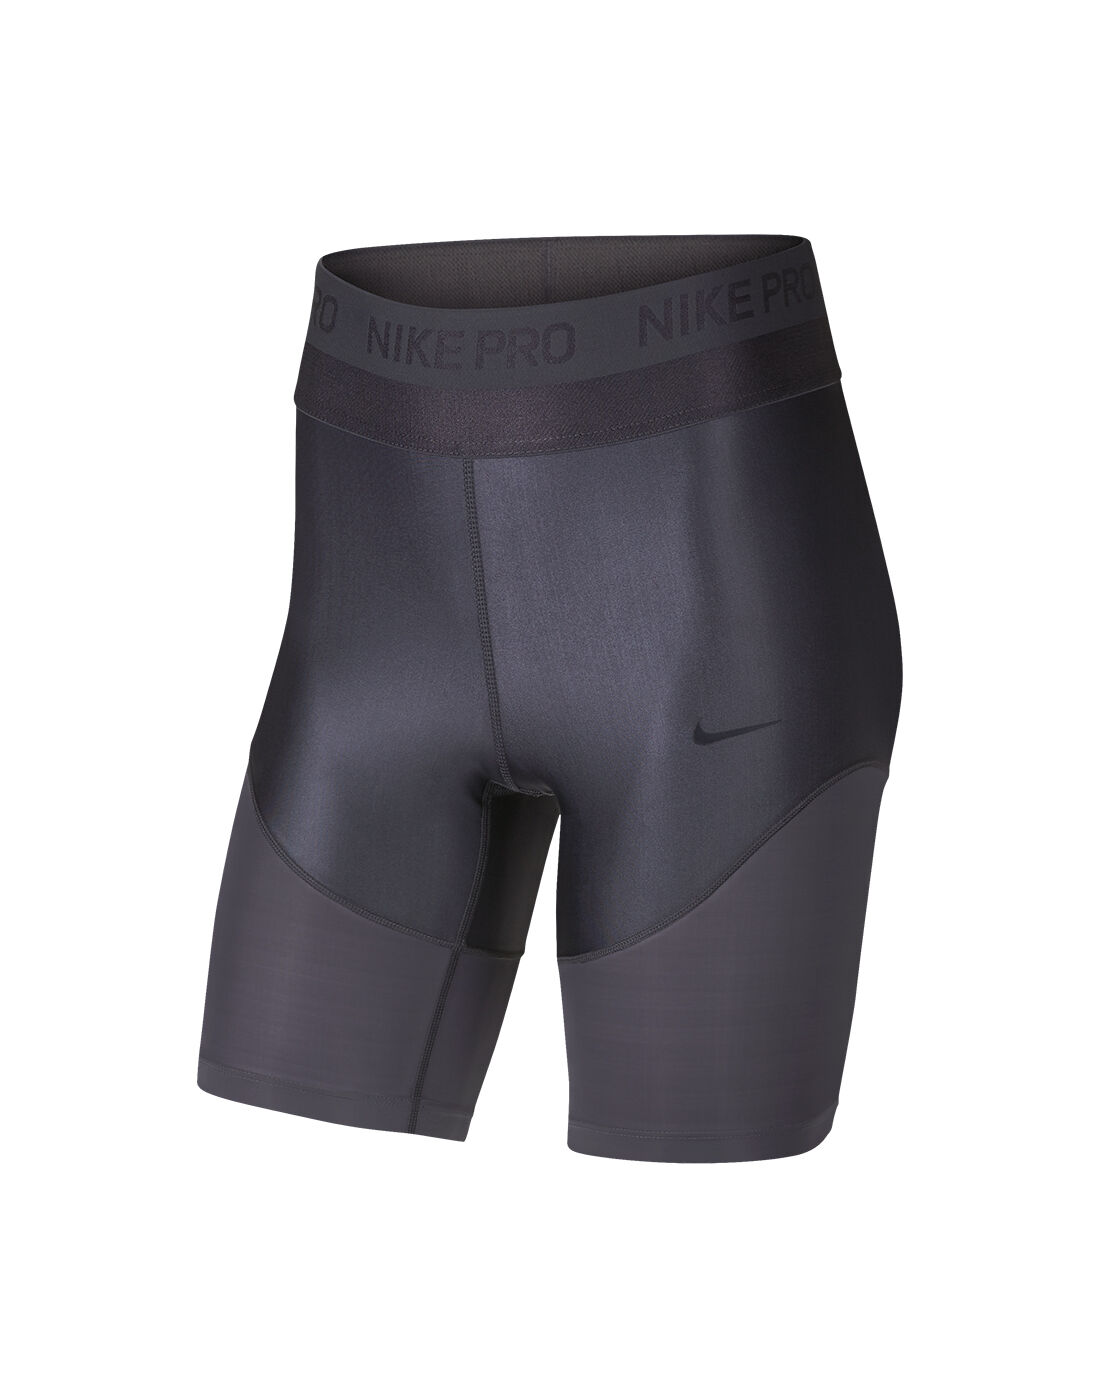 nike 8 inch shorts women's